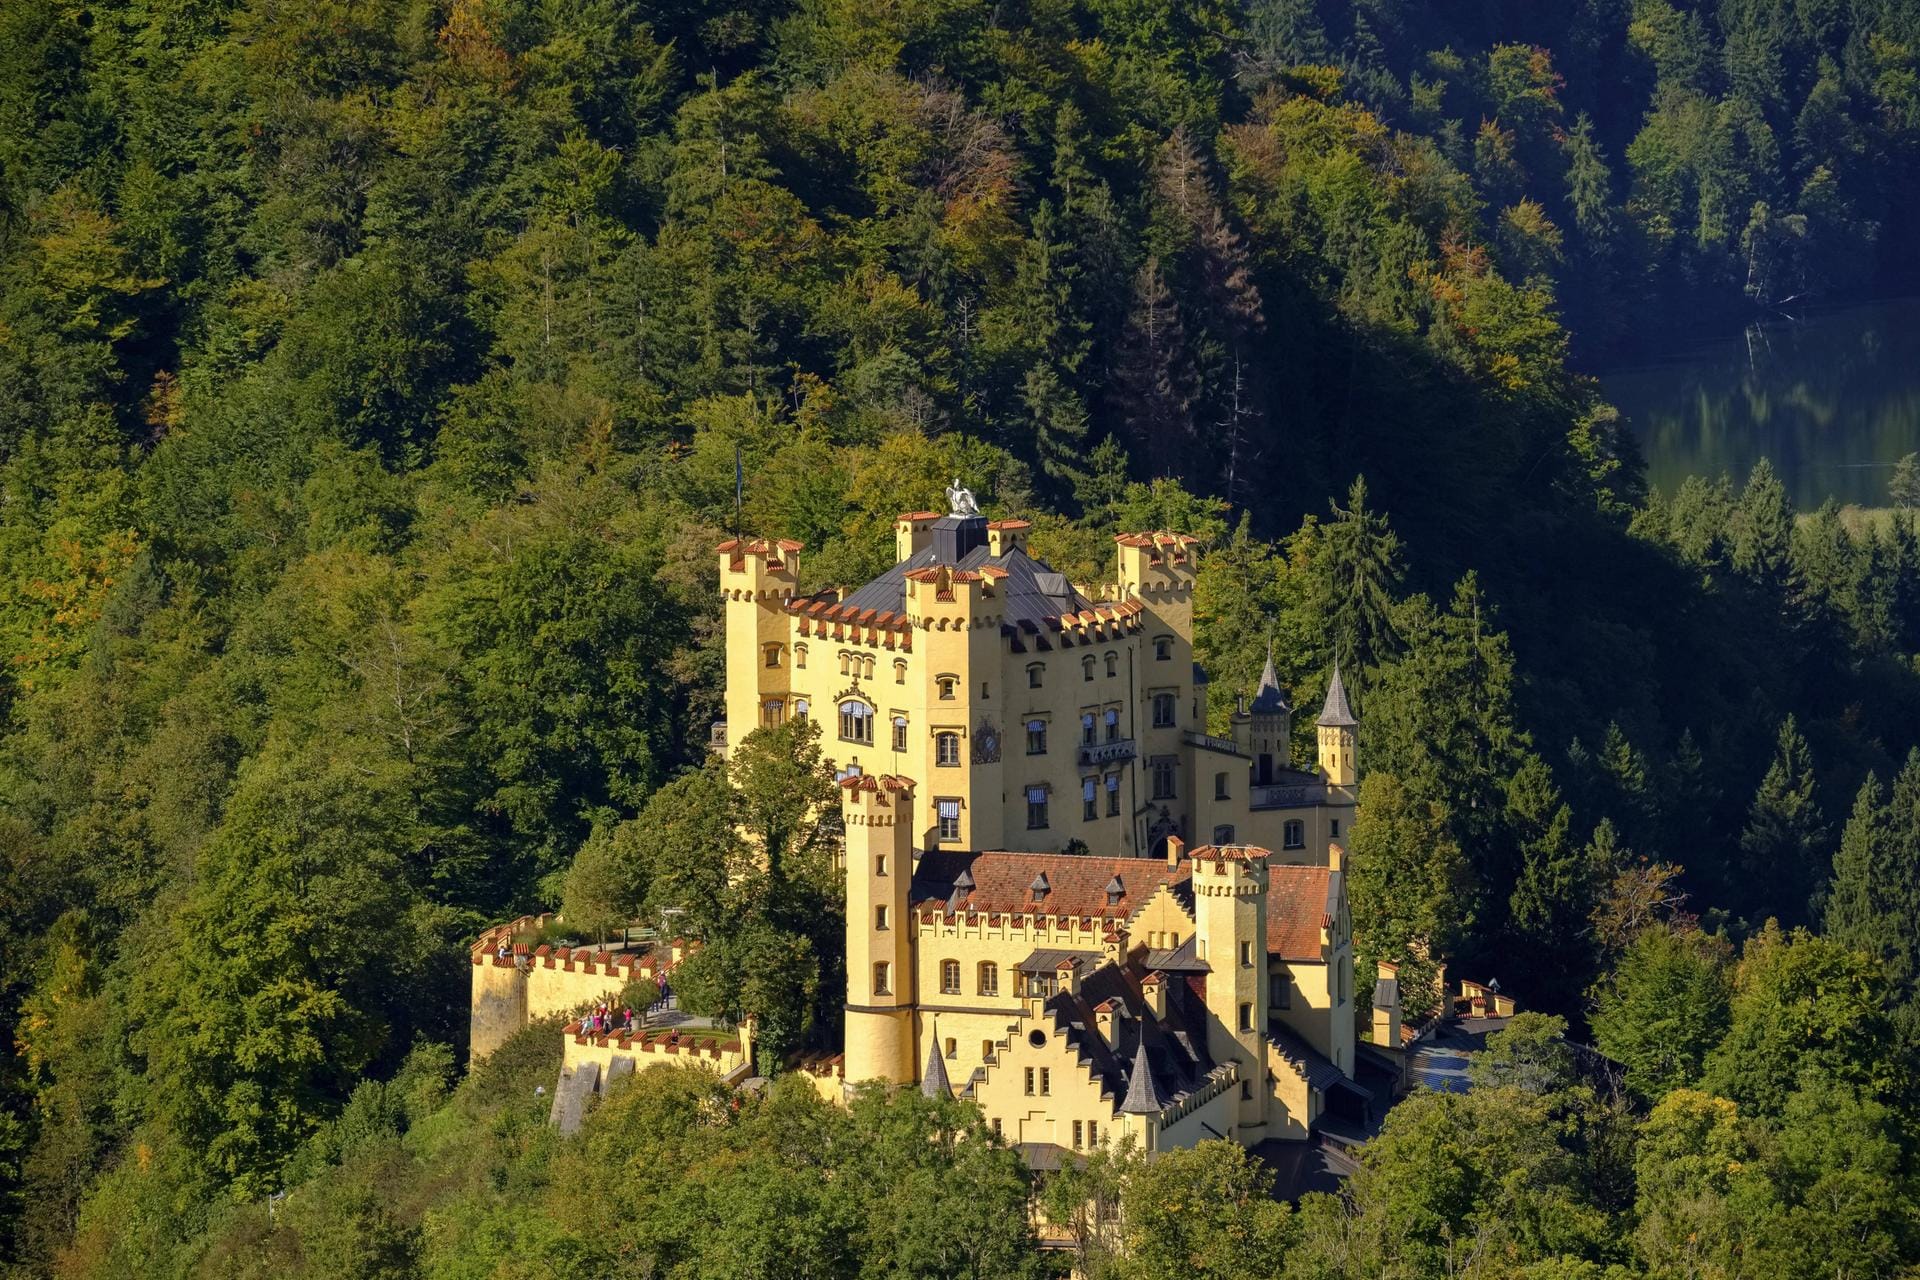 Ludwig II. verbrachte seine Kindheit im Schloss Hohenschwangau, einem einzigartigen Barockbau und einem der bedeutendsten Schlösser Europas.